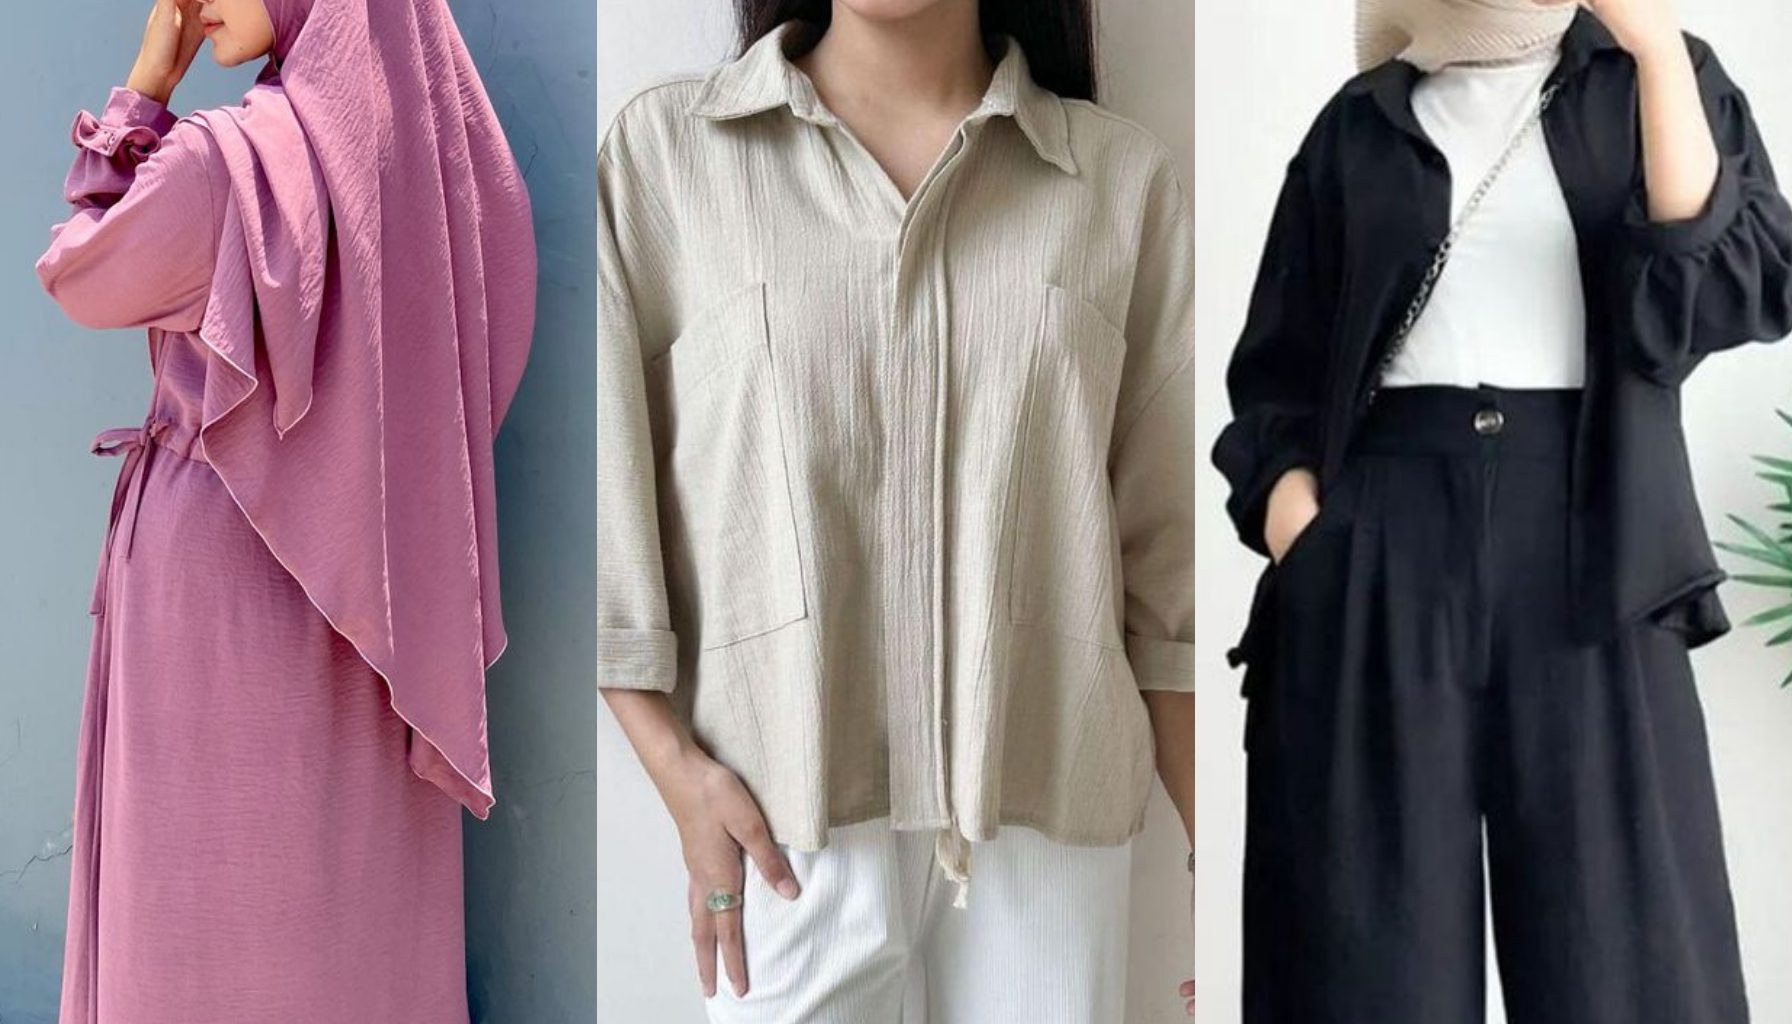 Pemanfaatan Bahan Crinkle Airflow dalam Fashion untuk Gamis, Hijab, Kemeja, dan Celana | Sumber Gambar: Pinterest